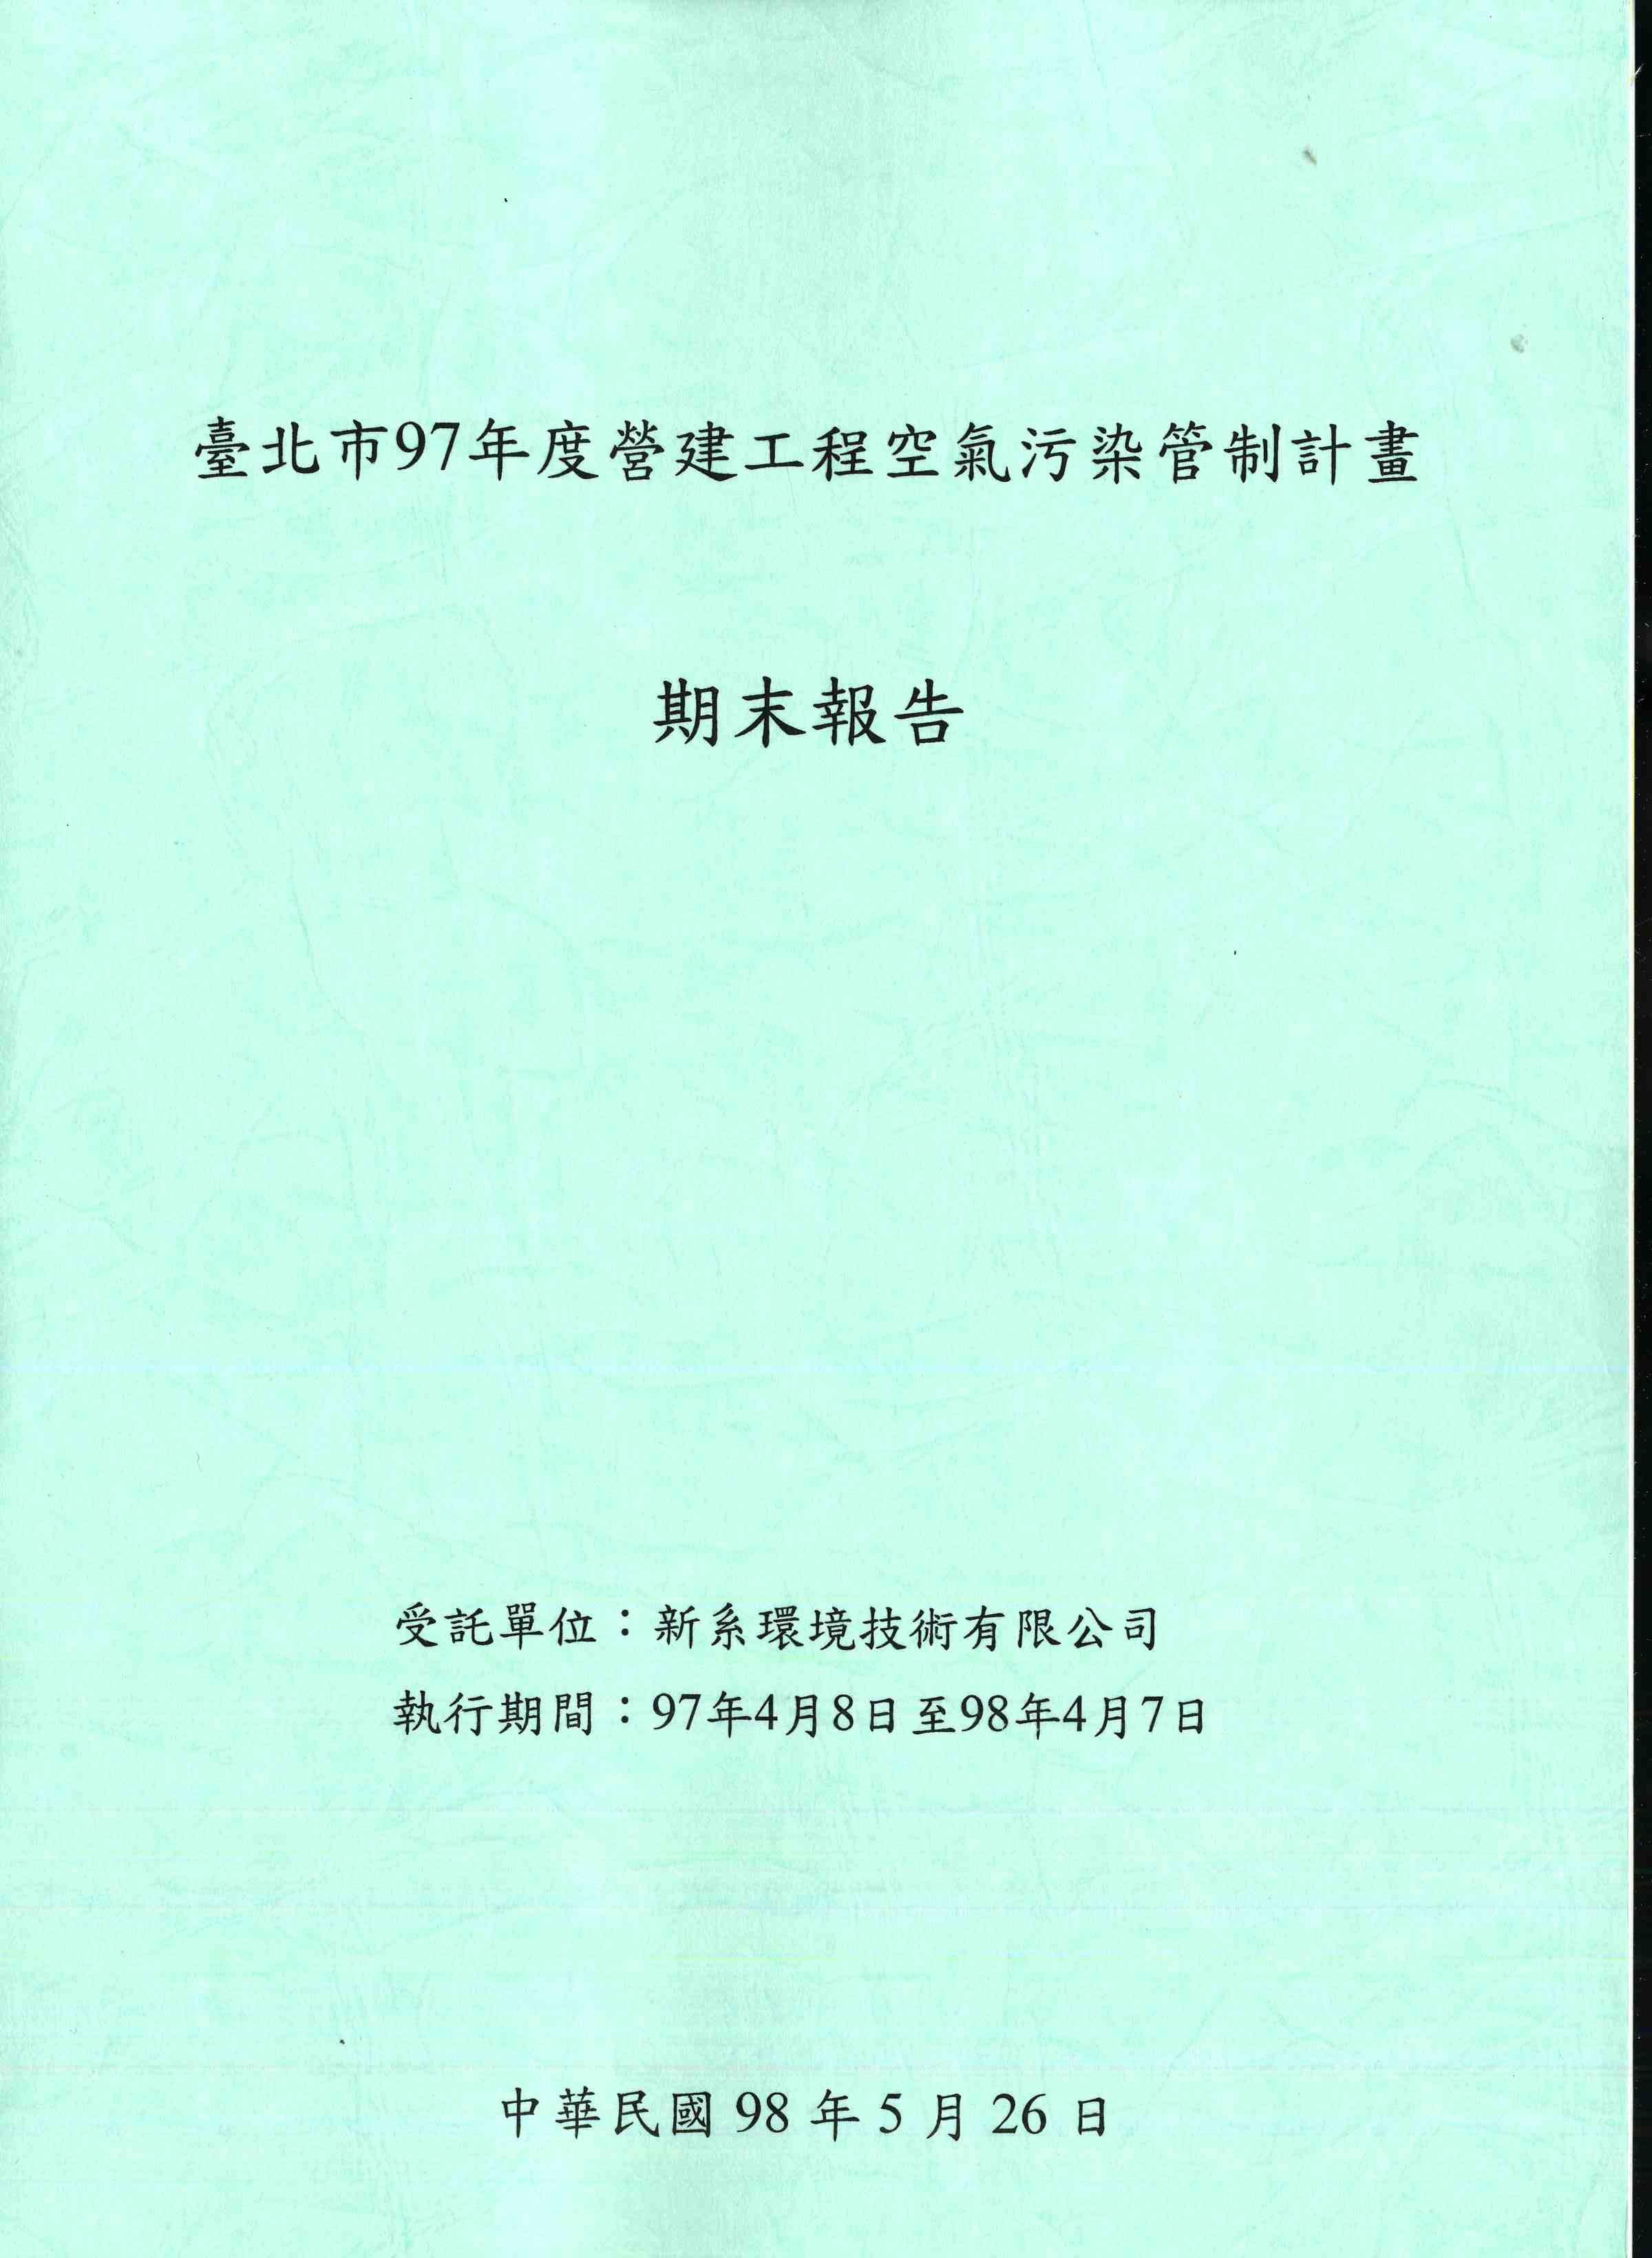 臺北市97年度營建工程污染管制計畫